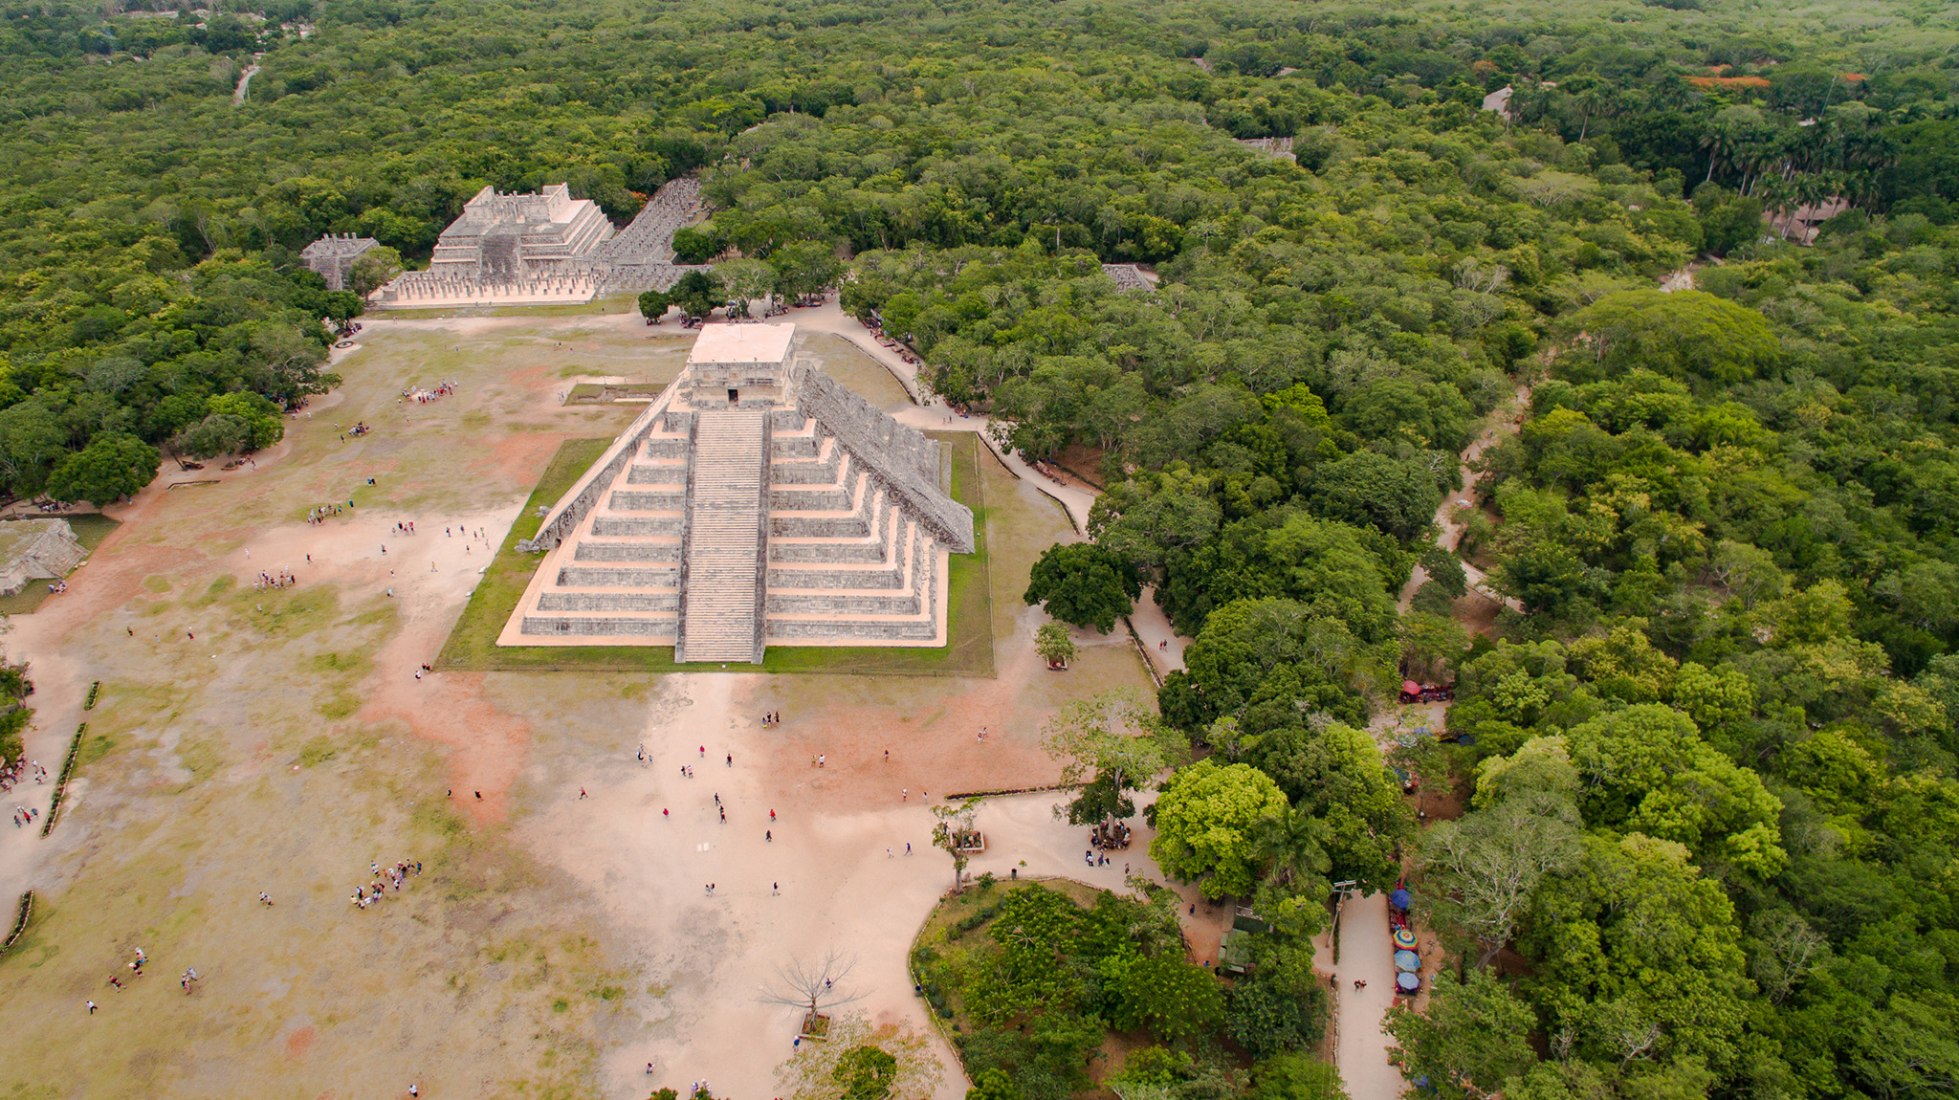  Vista aérea de las edificaciones de Chichén Itzá. Patrimonio de la Humanidad por la UNESCO. En 2007, El Castillo de Chichén Itzá fue nombrado una de las Nuevas Siete Maravillas.